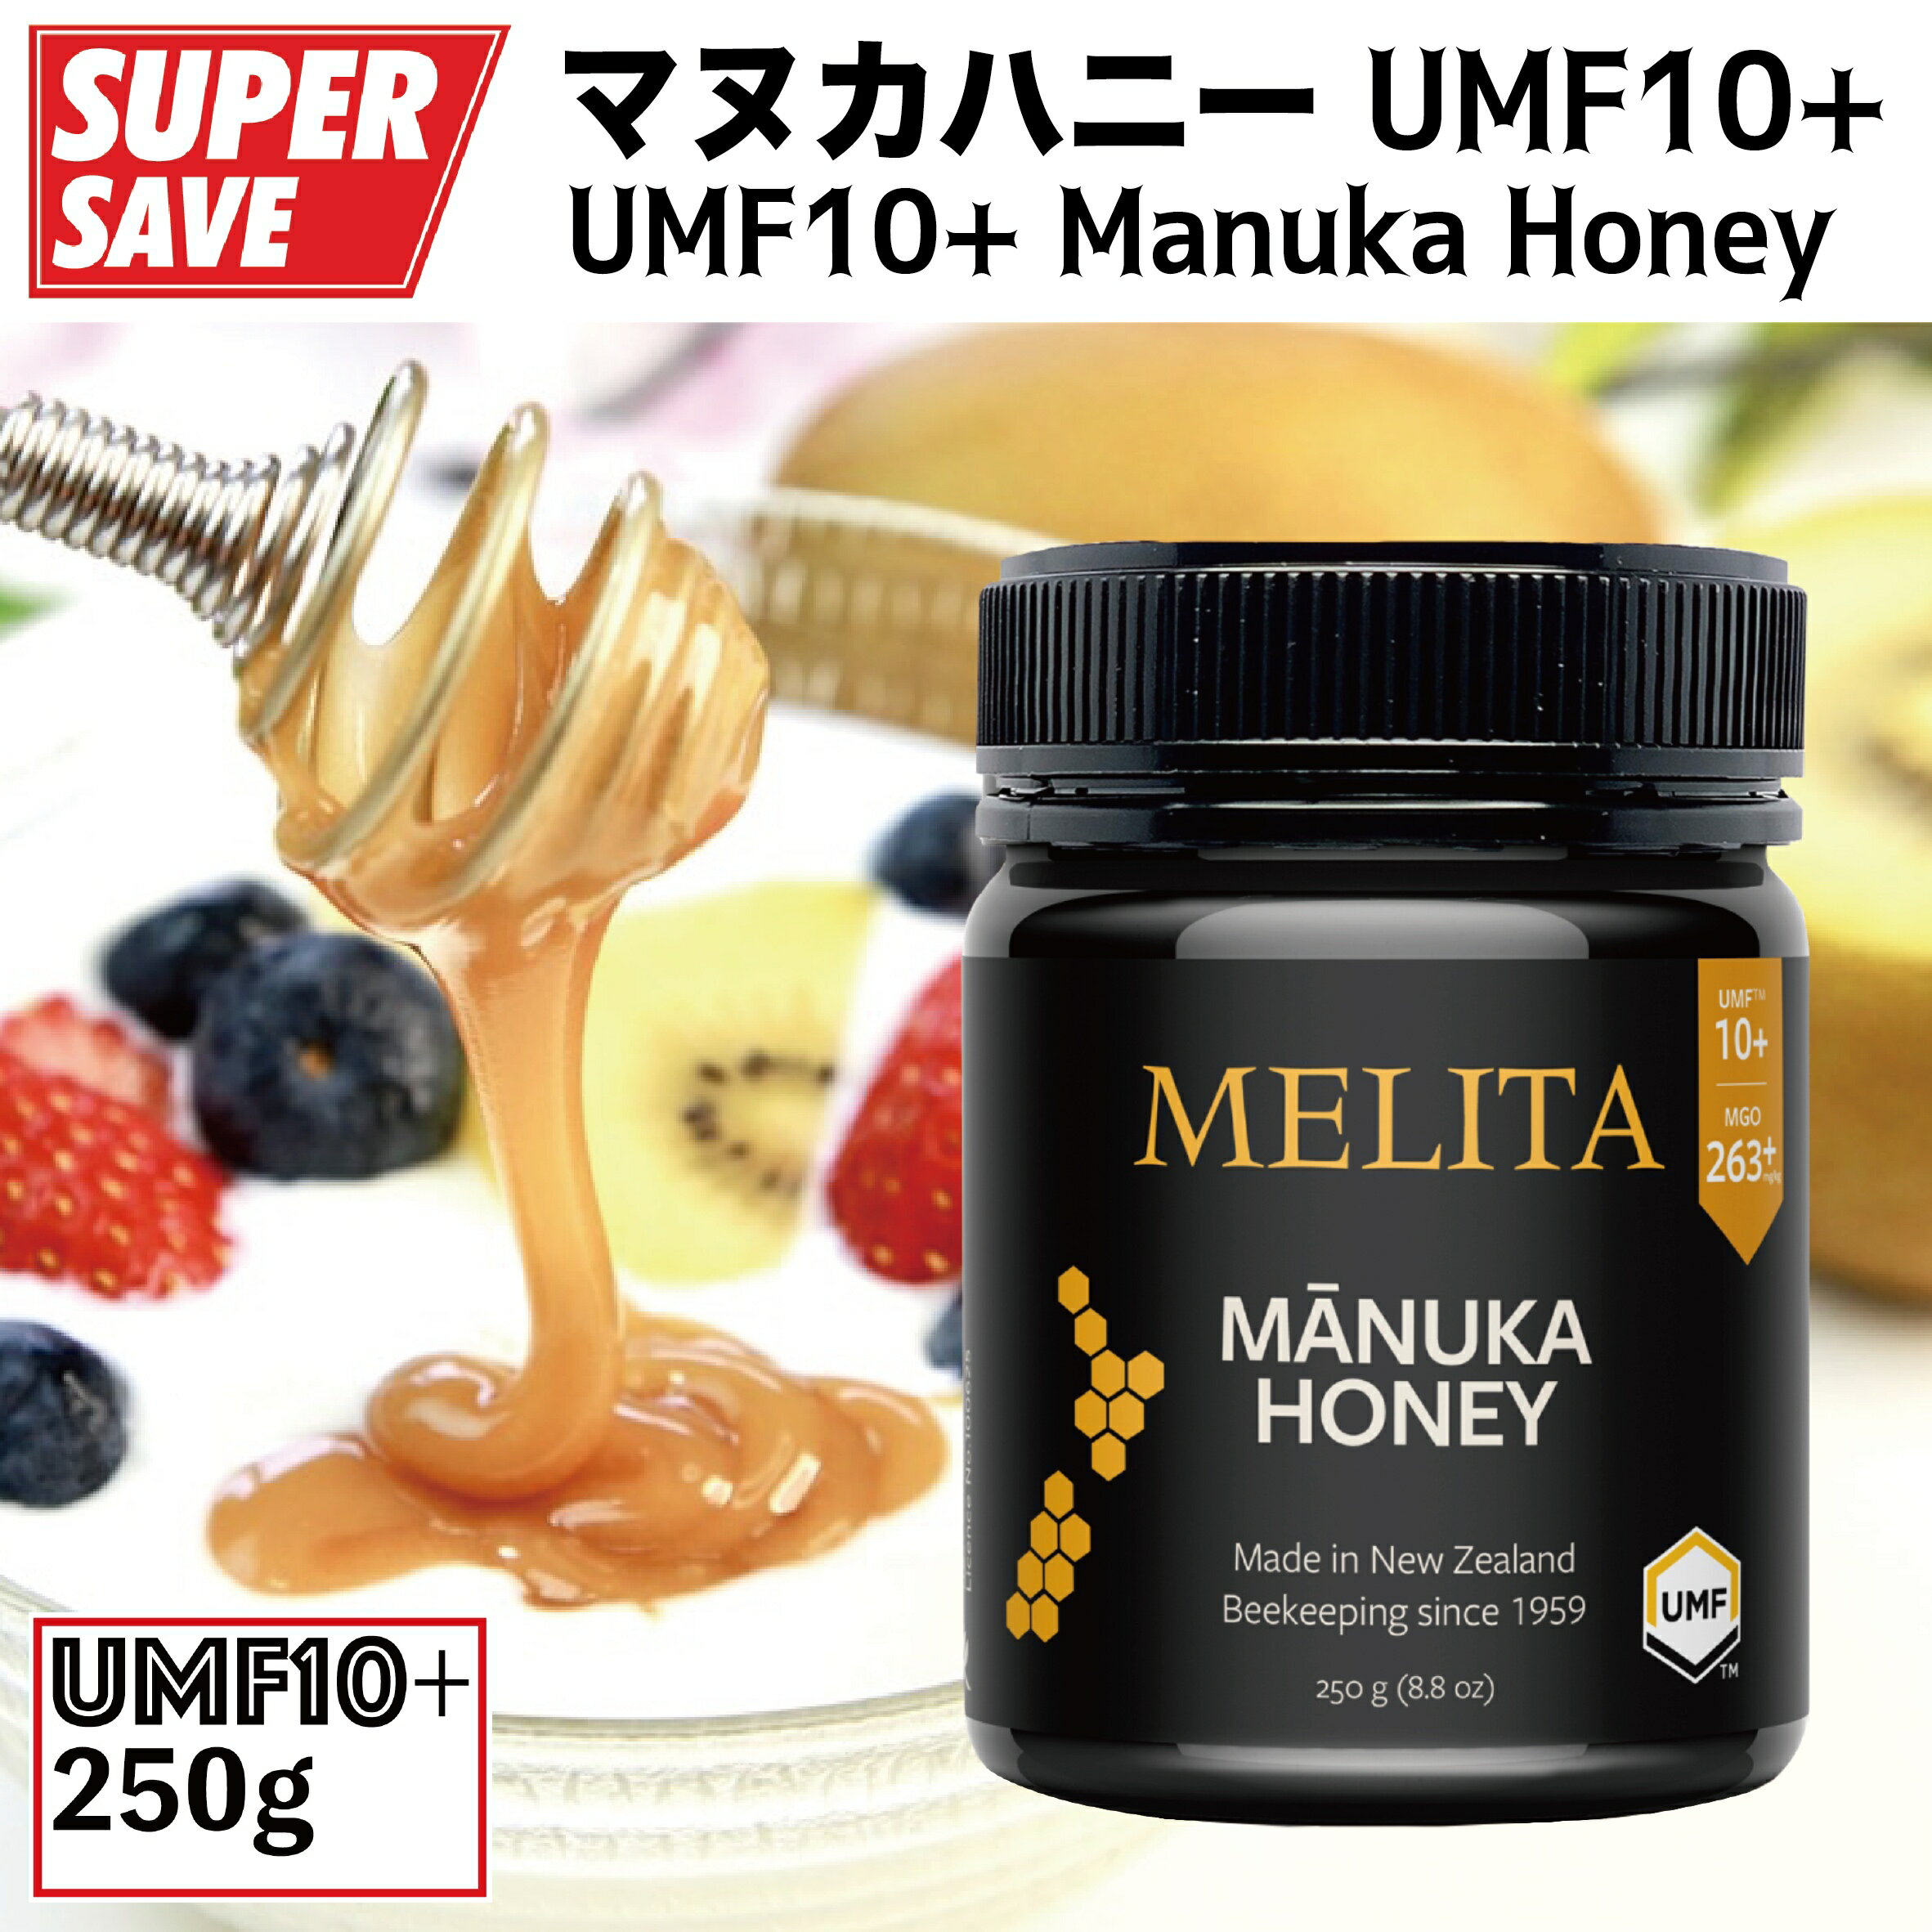 マヌカハニー250g『UMF協会認定UMF10+』Manuka Honey UMF10+ 250g『MELITA / CIVGIS メリタ・チブギス』